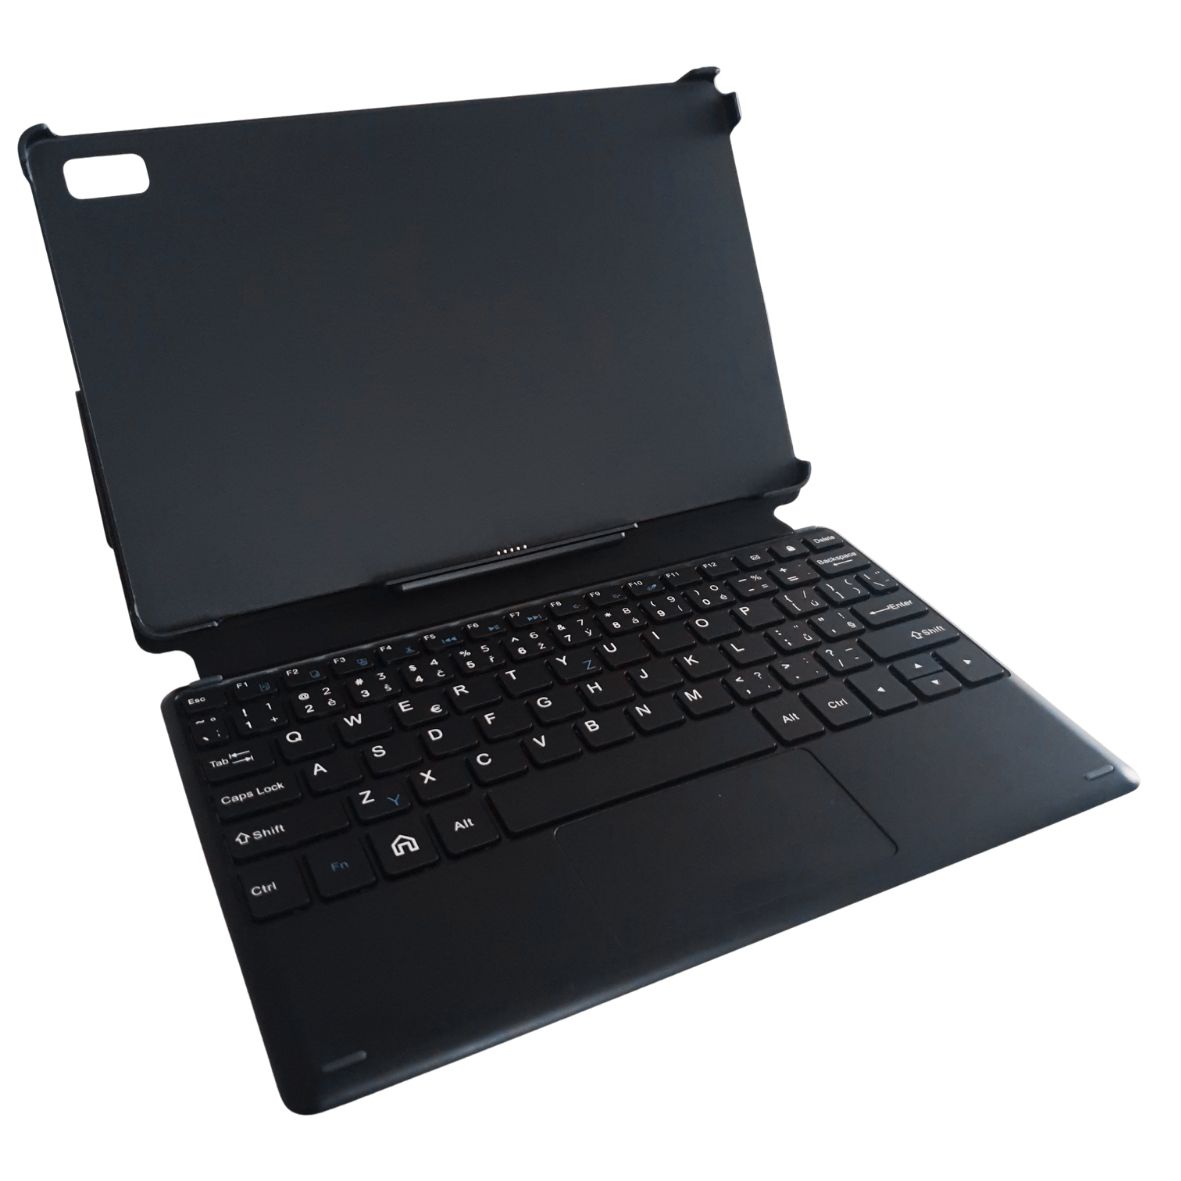 Obrázek iGET K206 - pouzdro s klávesnicí pro tablet iGET L206, pogo připojení